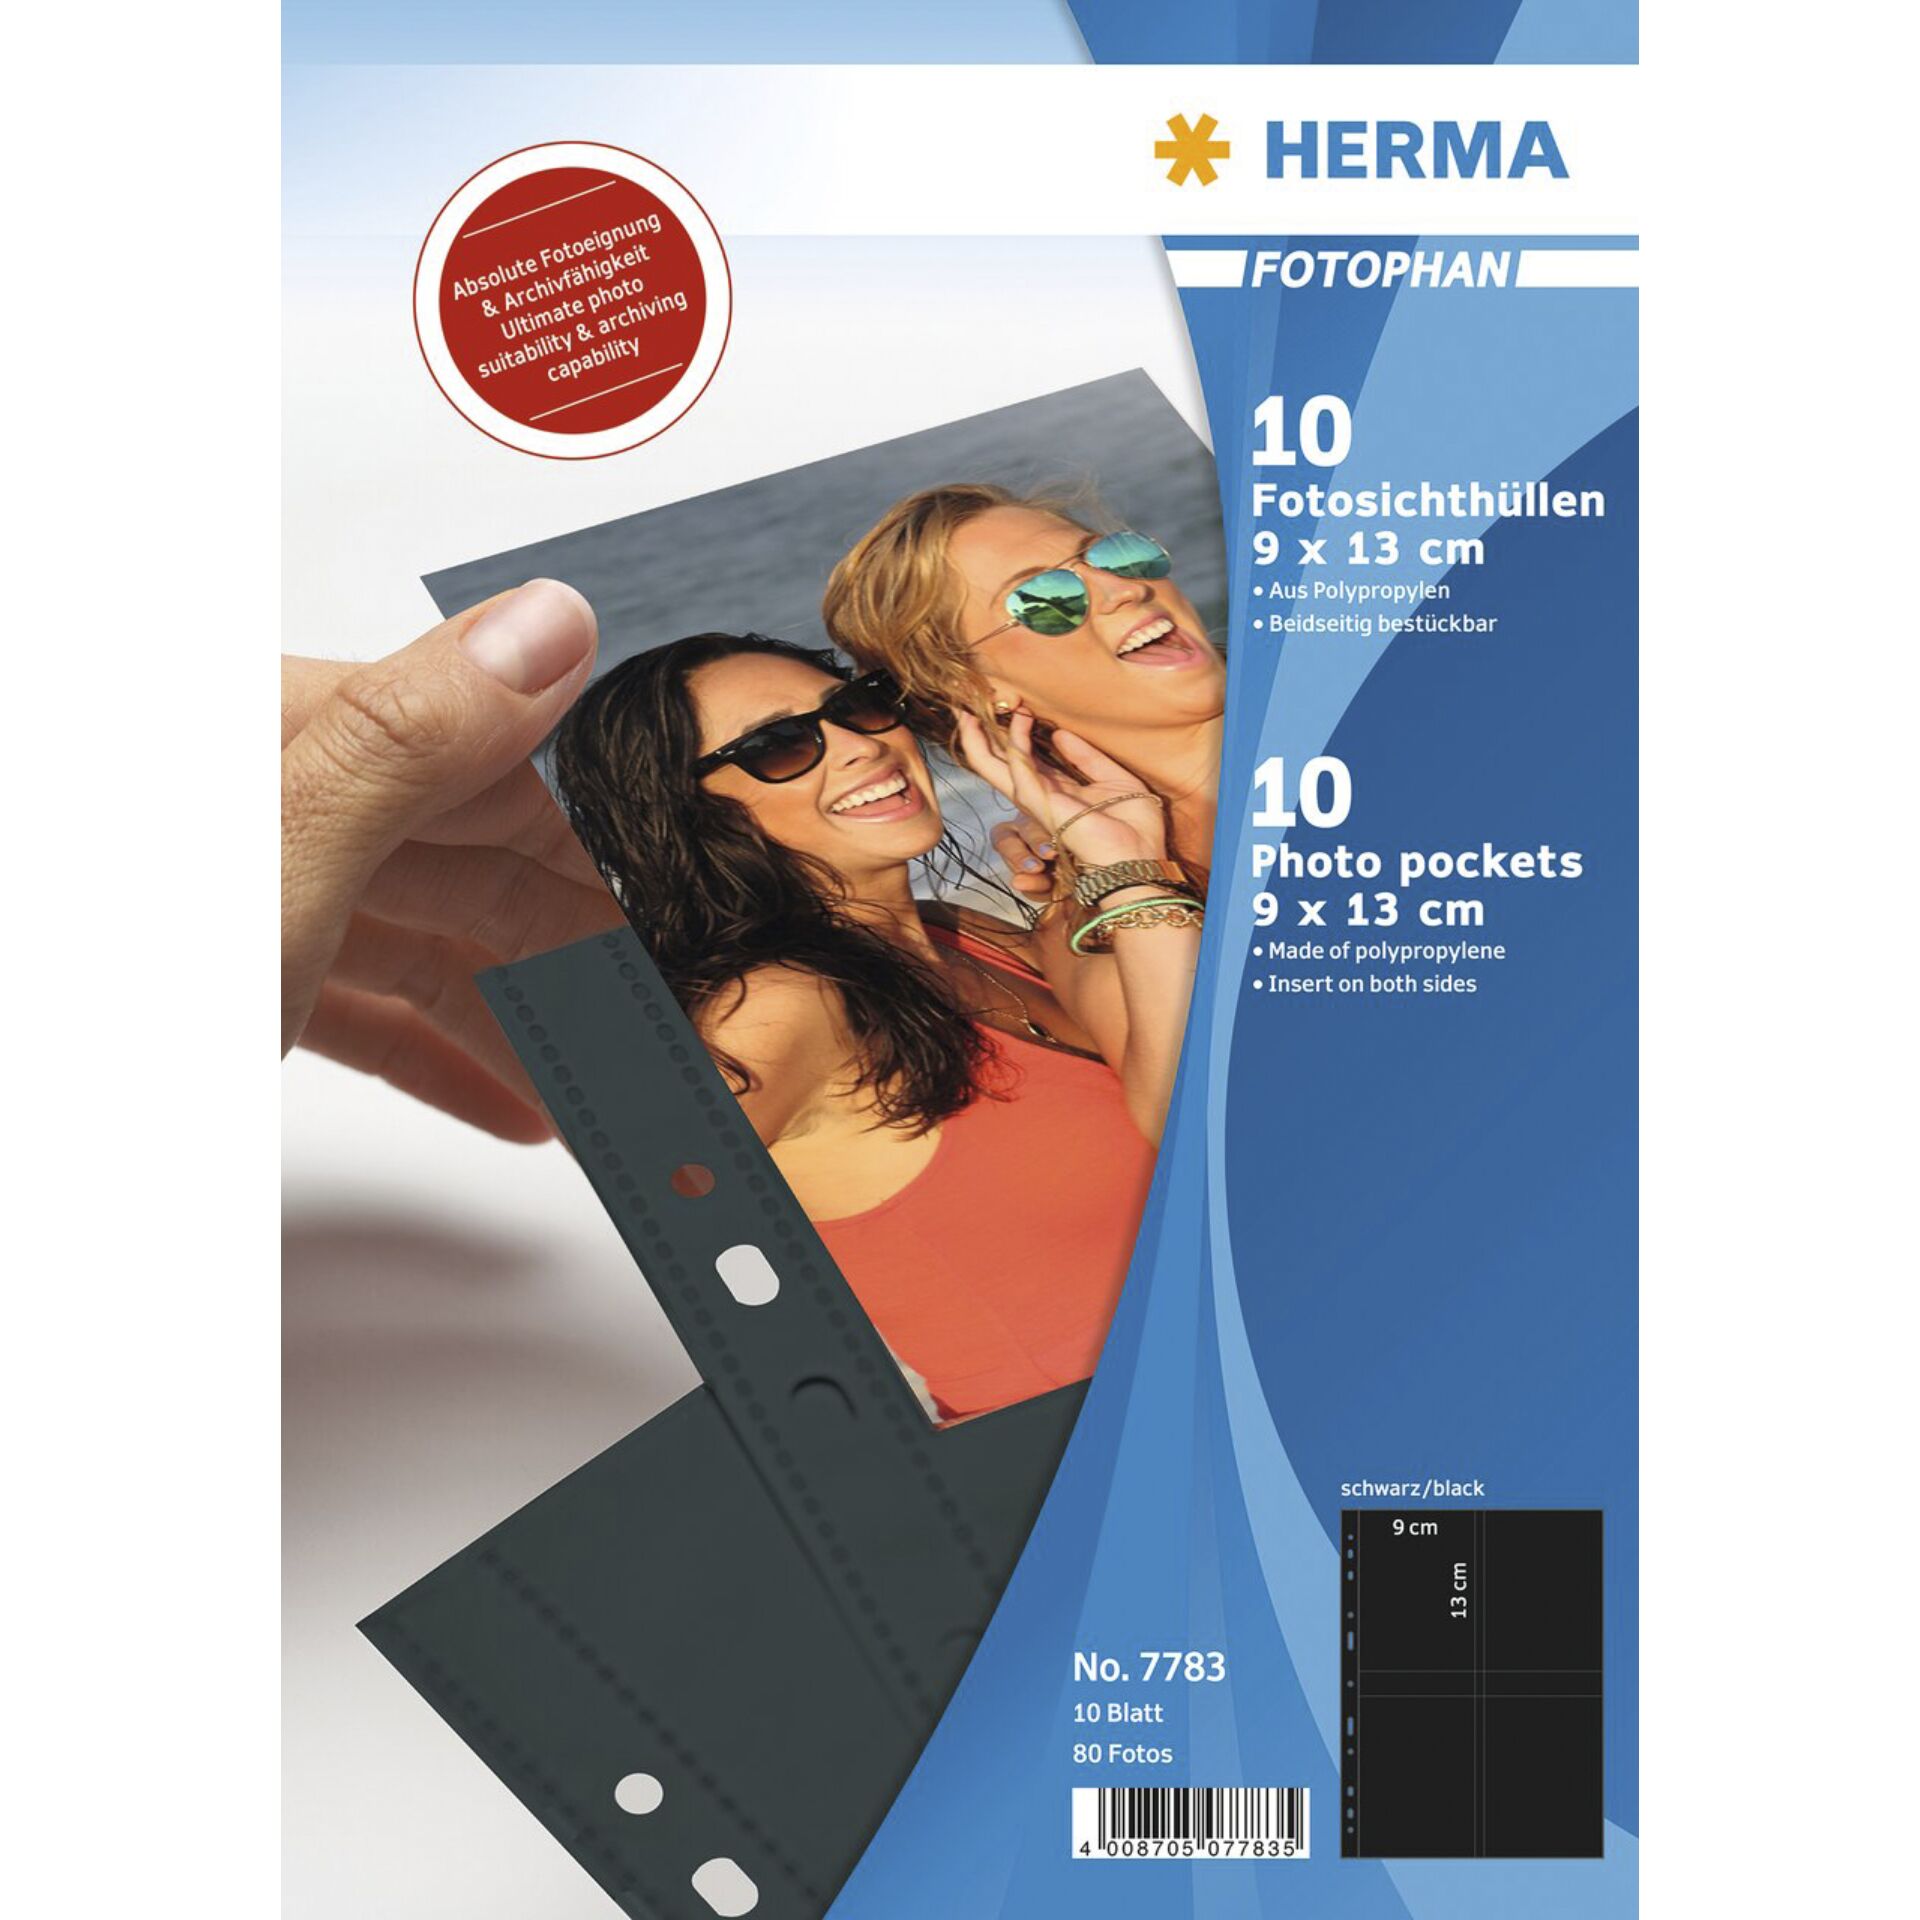 HERMA Fotophan Fotosichthüllen 9x13 cm hoch schwarz 10 Hüllen